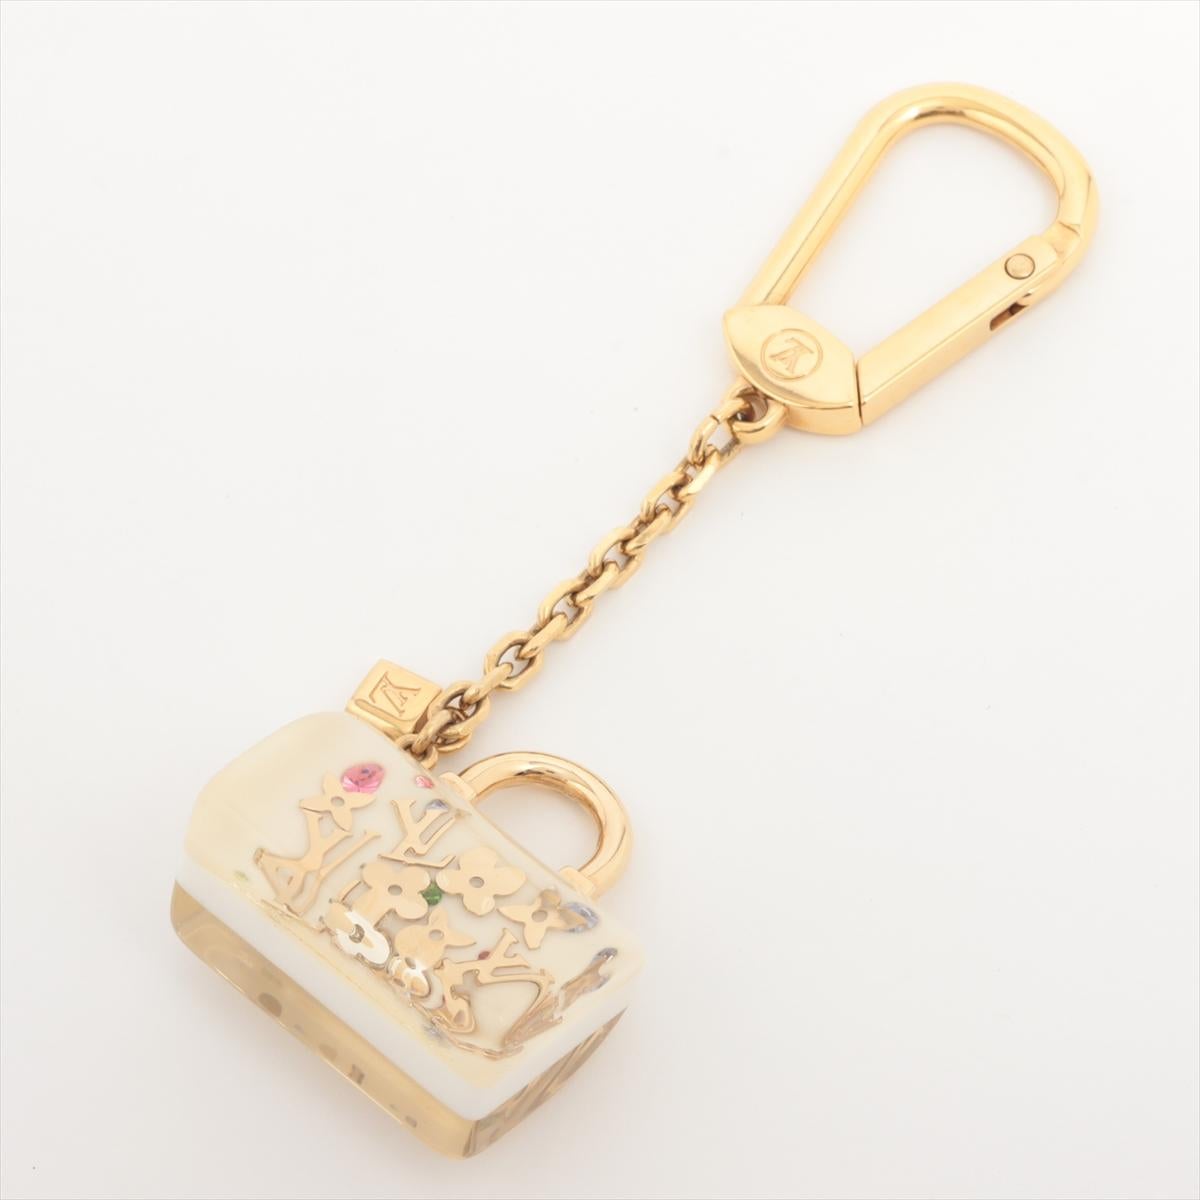 Der Louis Vuitton Speedy Bag Inclusion Keychain in Weiß ist ein charmantes und stilvolles Accessoire, das eine Hommage an die kultige Speedy Bag darstellt. Der aus strapazierfähigem Harz gefertigte Schlüsselanhänger ist eine Miniaturnachbildung der